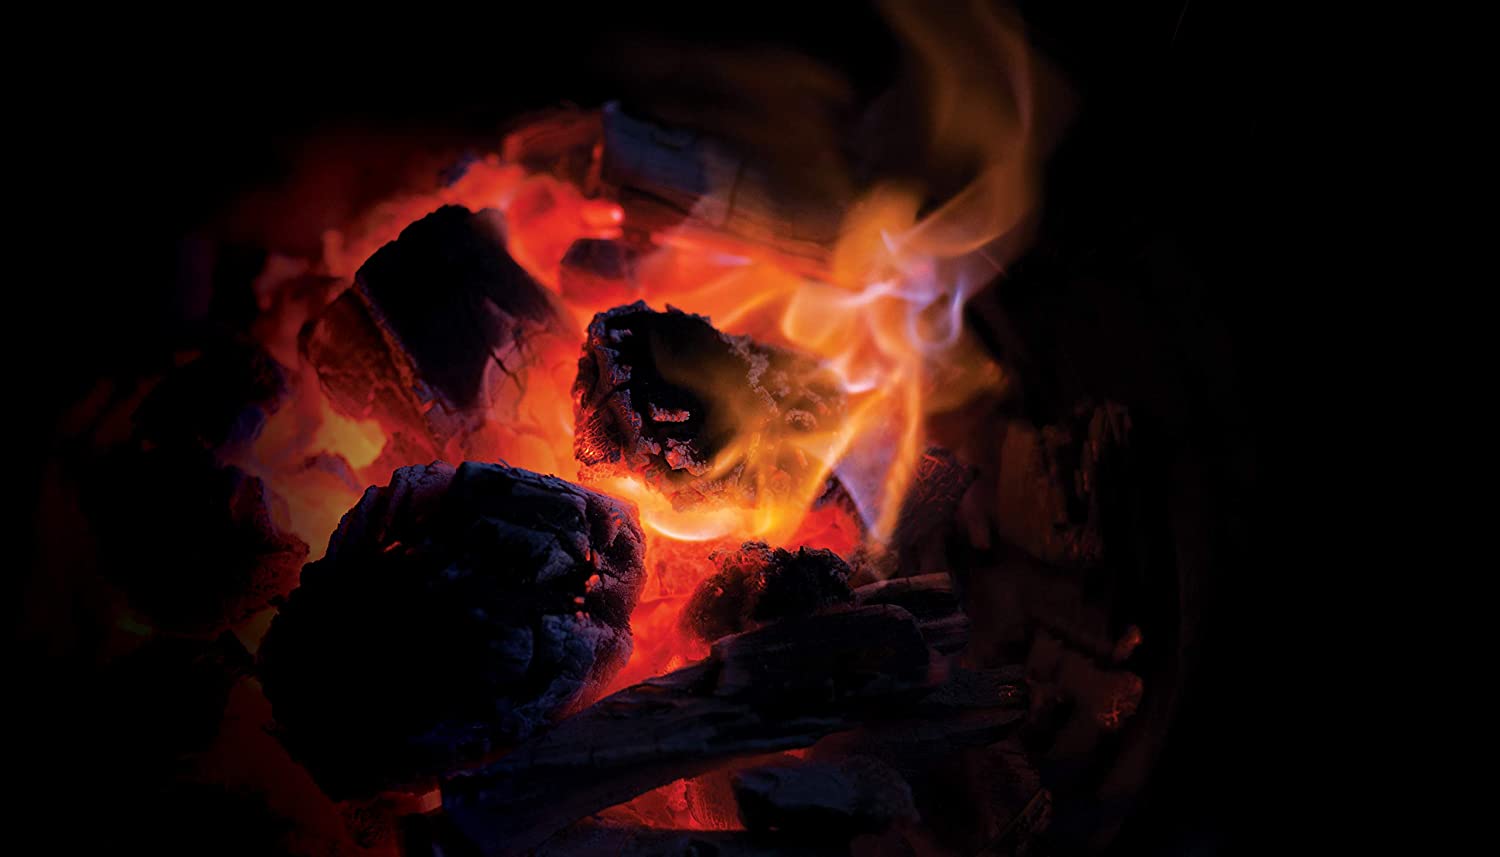 Лучший кусковой уголь большого размера - Kamado Joe KJ-Char горящая деталь